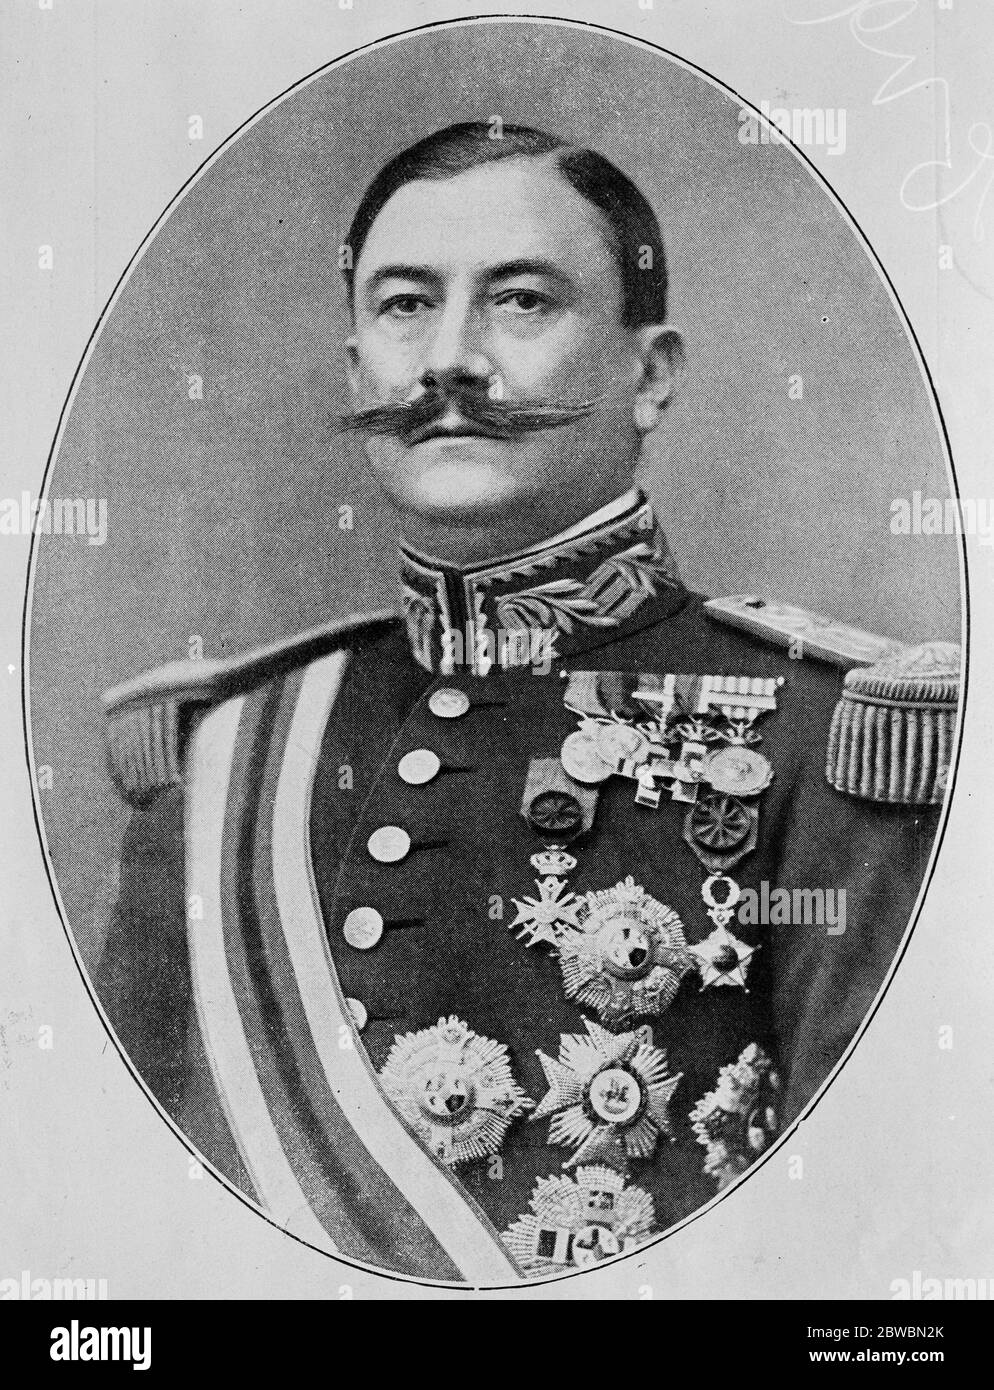 General Don Damaso Berenguer, der spanische Soldat mit einer brillanten Karriere, der vom Obersten Rat als Ergebnis der Anschuldigungen aus der Melilla-Kampagne vor Gericht gestellt werden soll. August 1923 Stockfoto